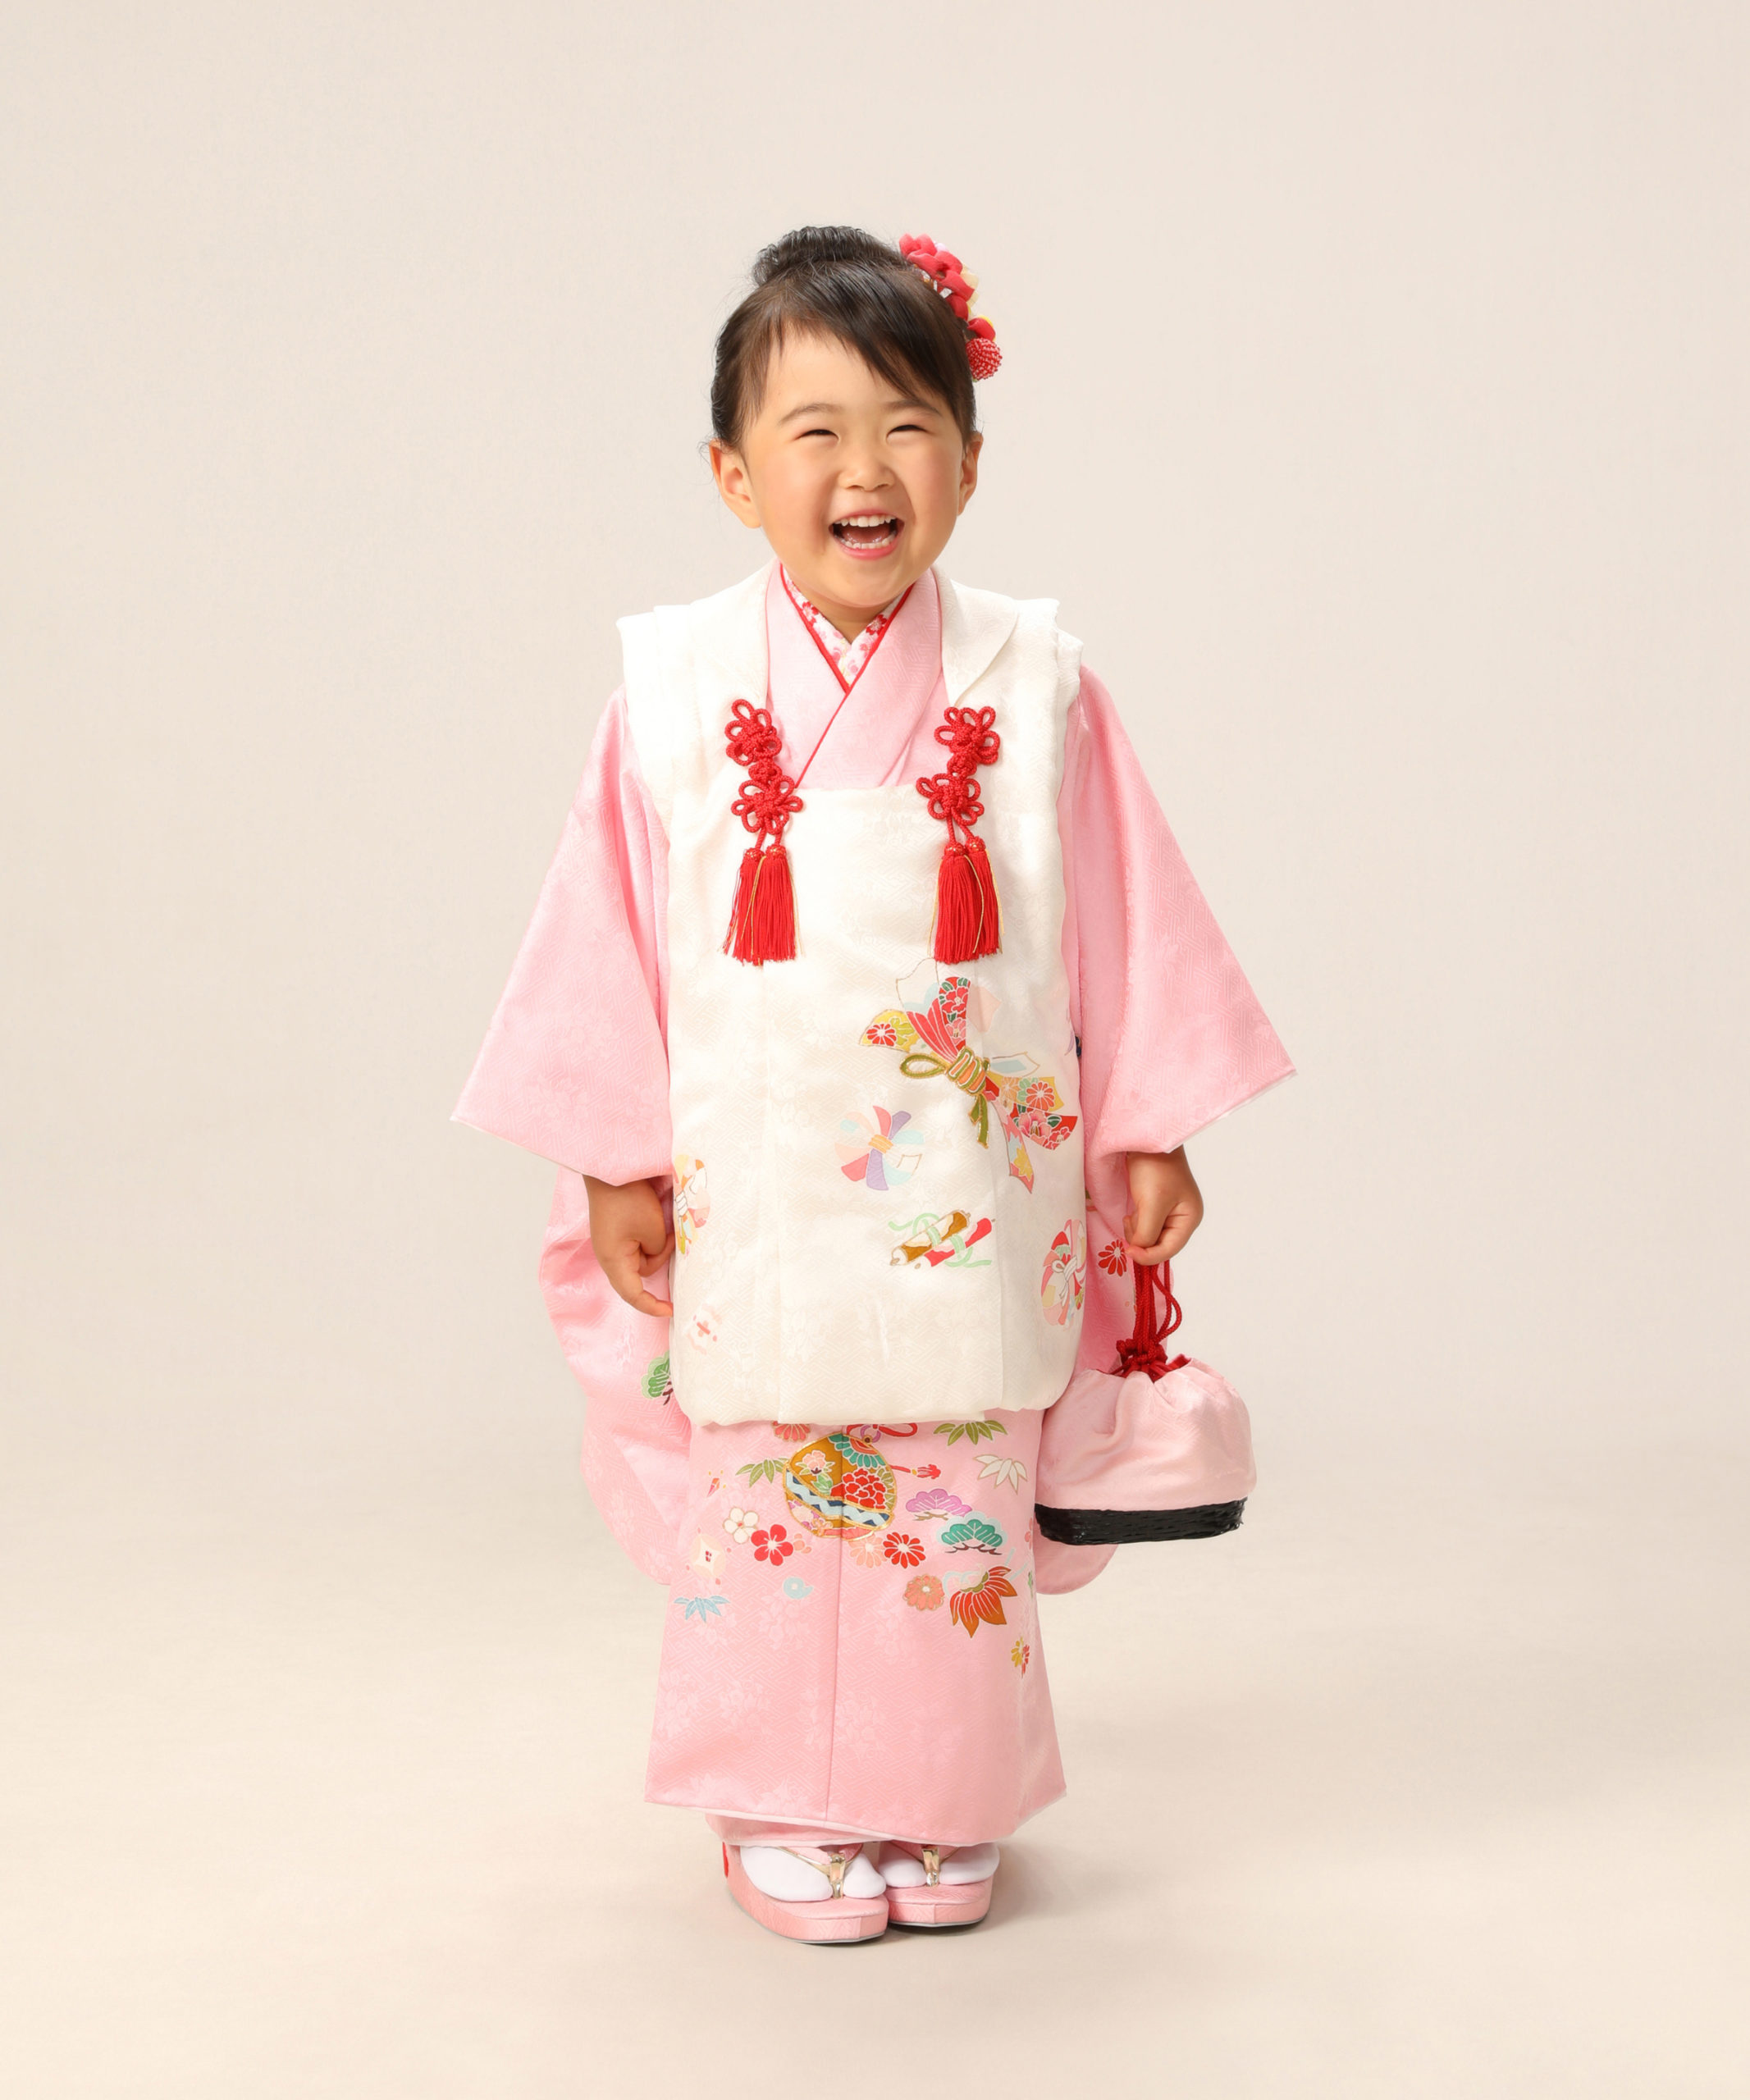 七五三記念写真撮影例(3歳女の子着物)横浜そごう写真館